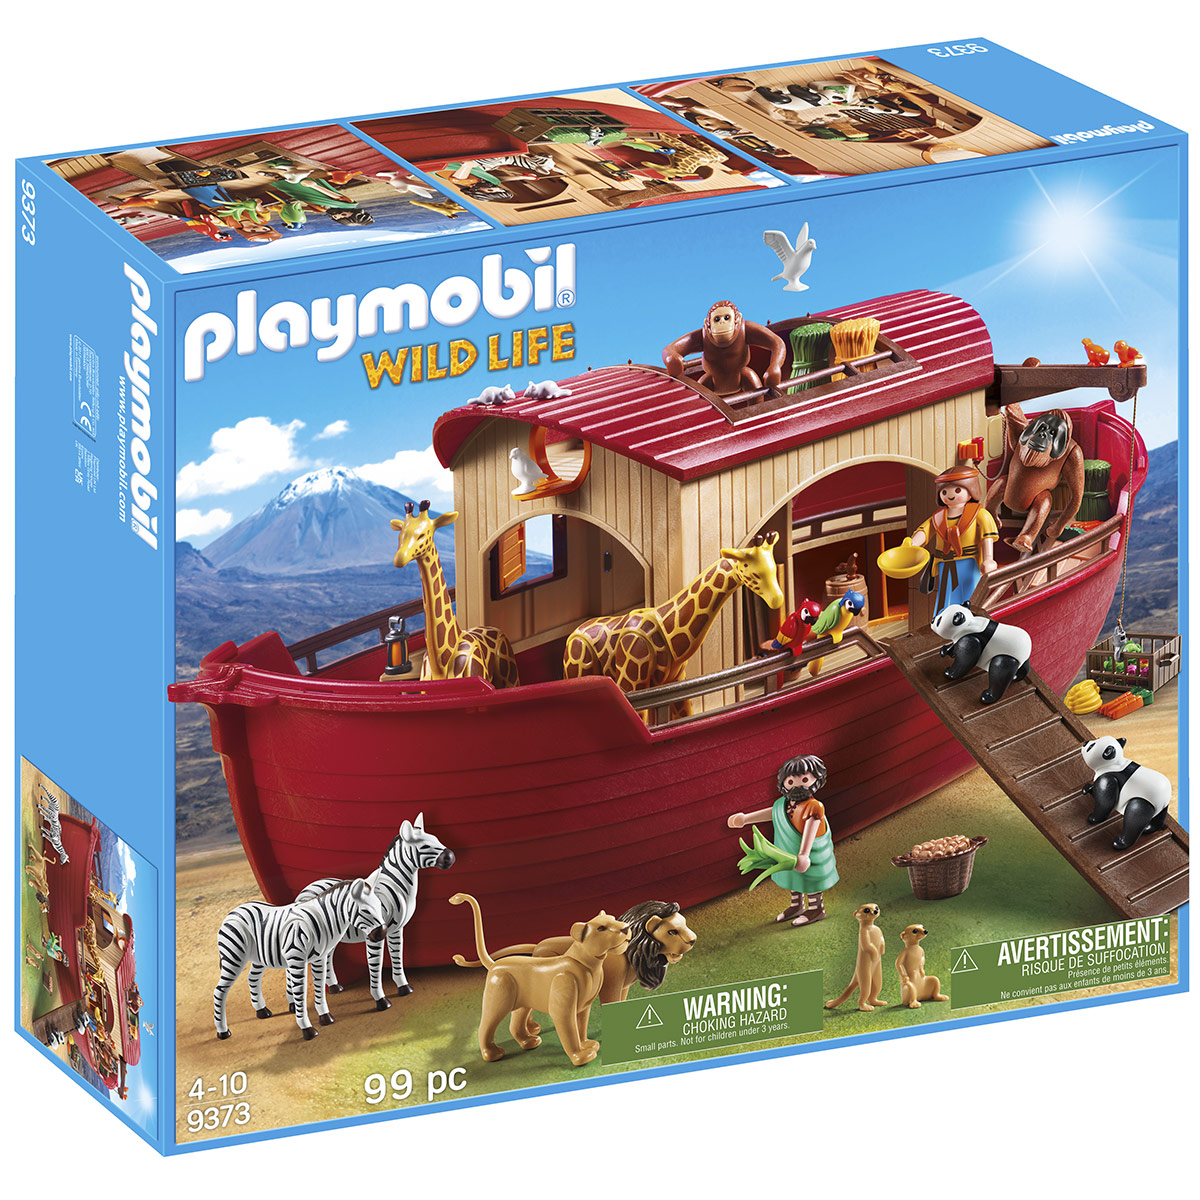 Comprar Playmobil Fortaleza Móvel de Novelmore de Playmobil